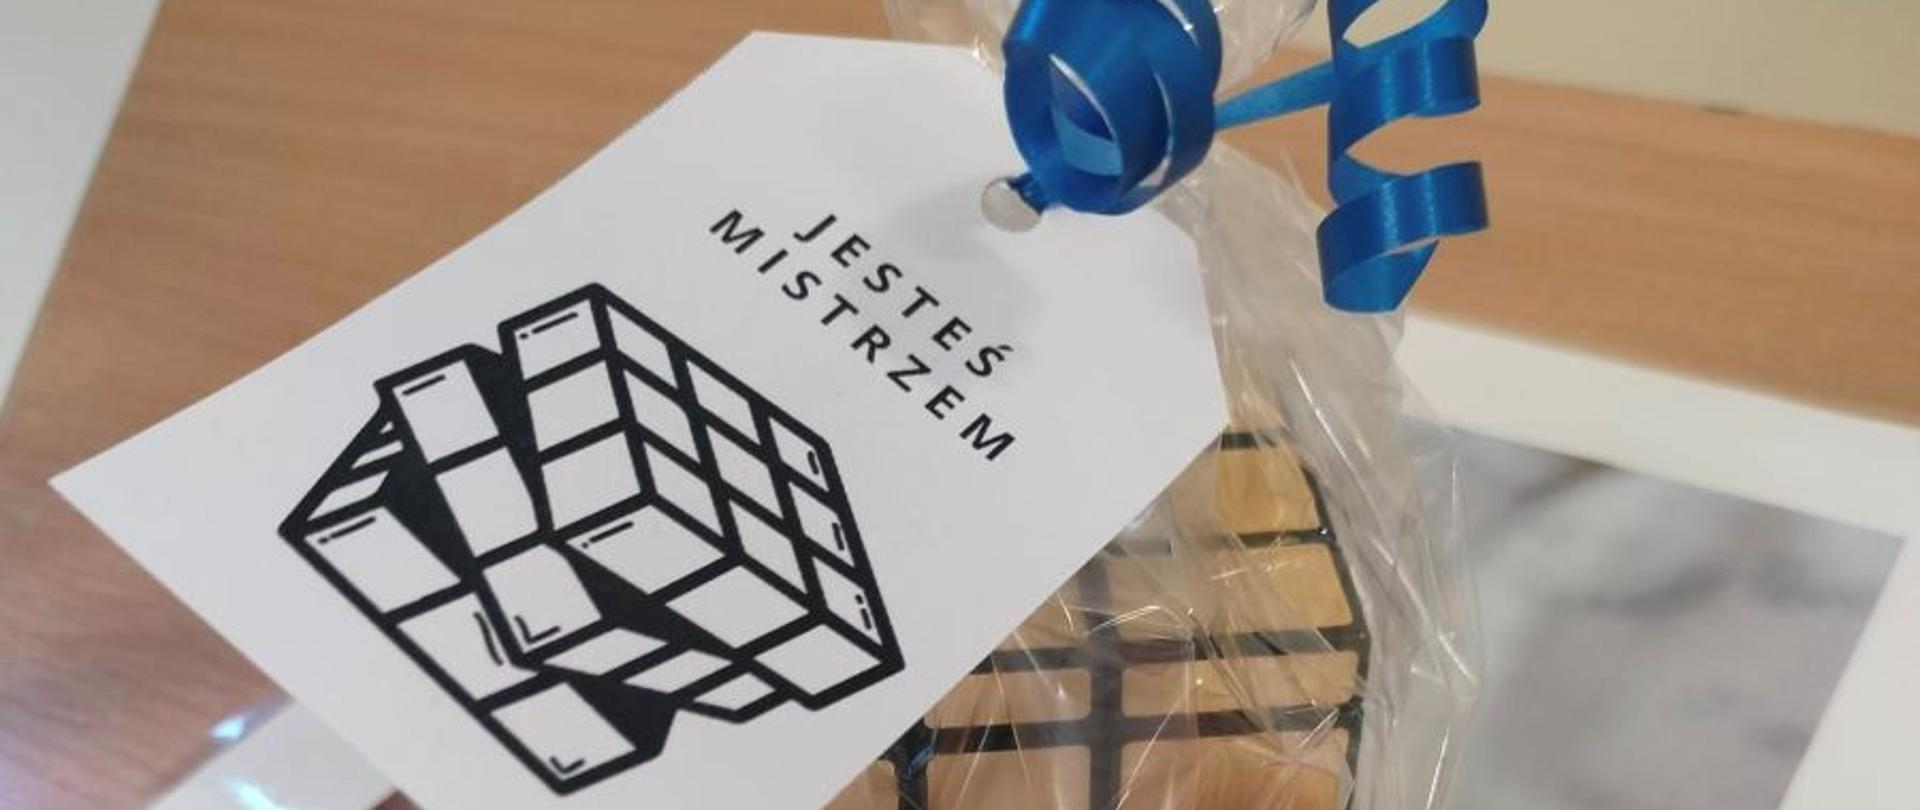 konkurs układania kostki Rubika